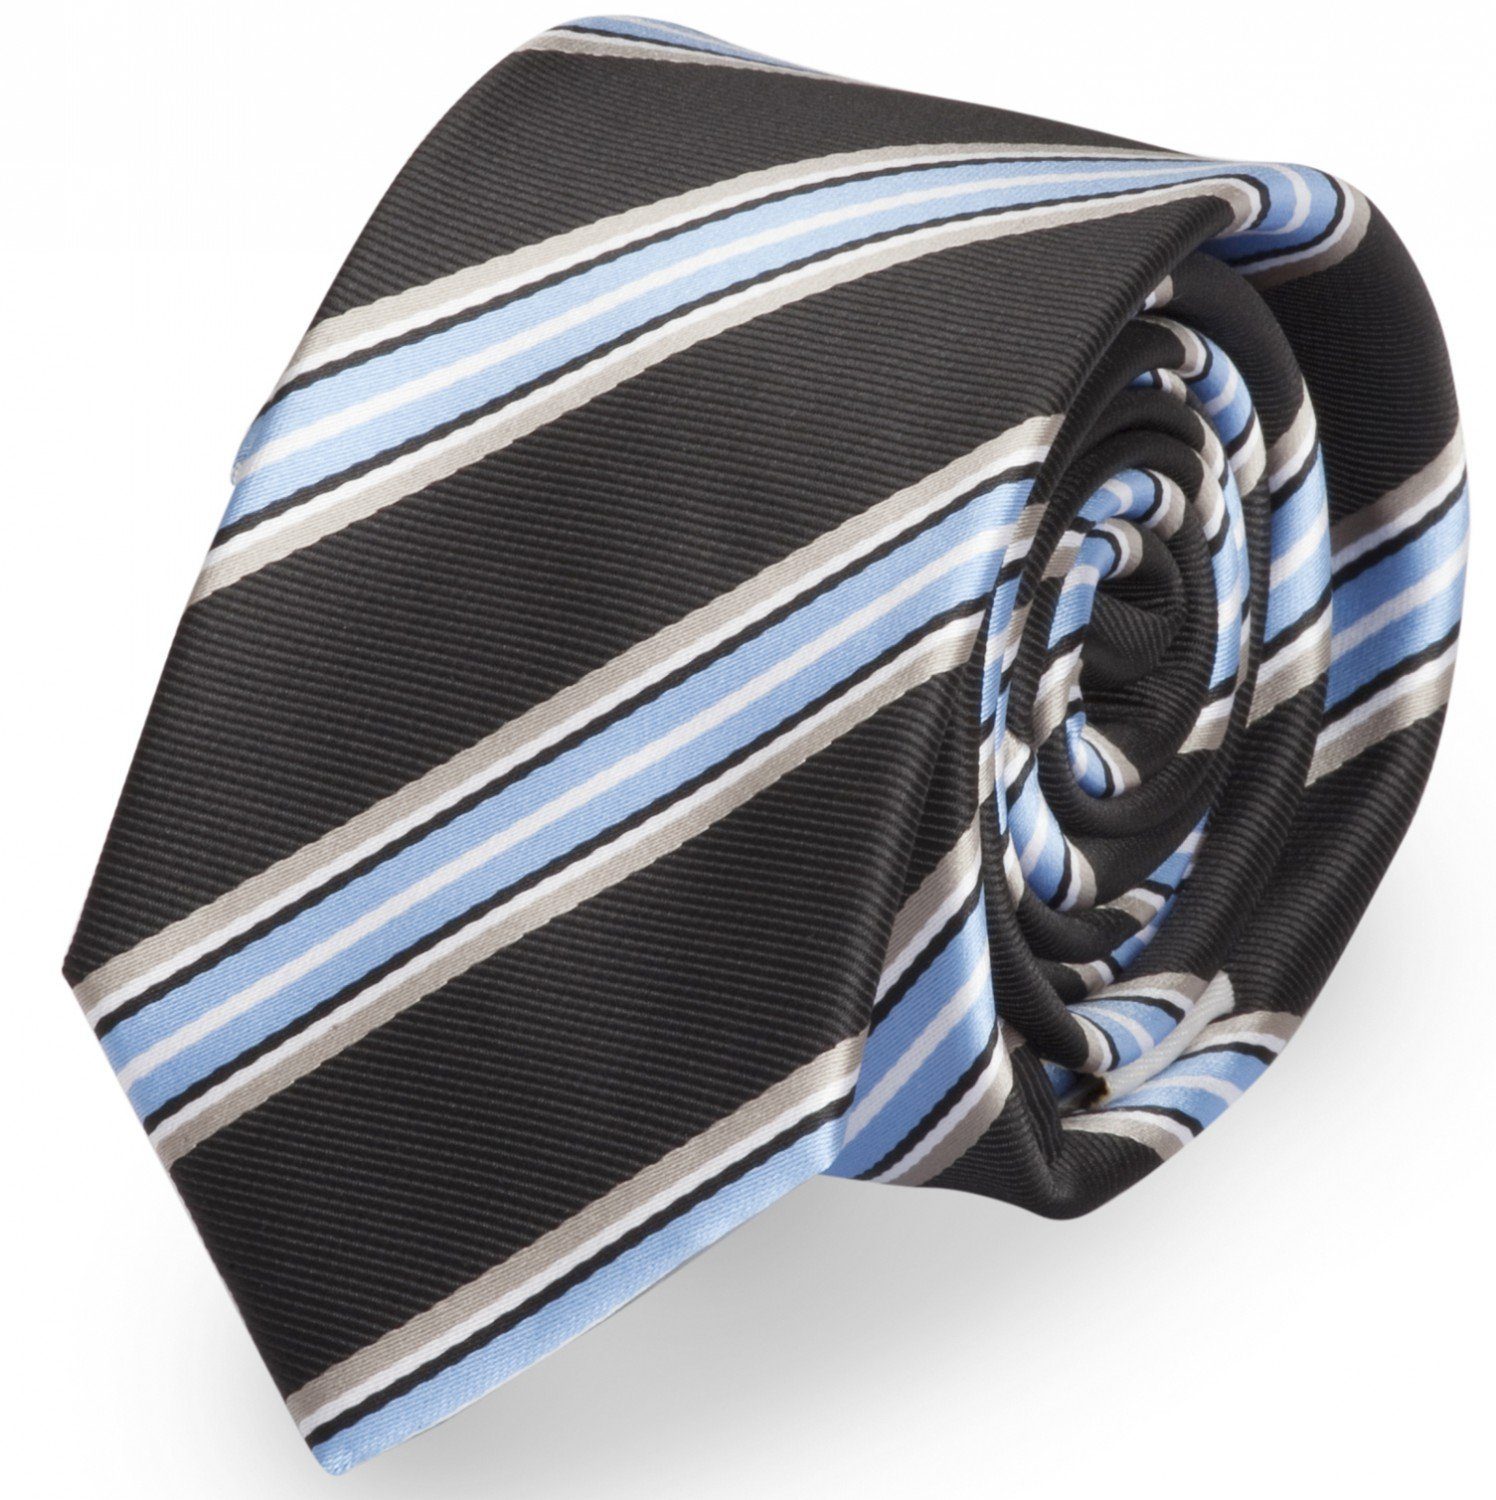 Fabio Herren Breit Farini Tie oder 6cm Blau/Grau/Schwarz/Weiß (ohne Gestreift) Streifen gestreifte 8cm mit Box, Breite in Krawatte - (8cm), Krawatte